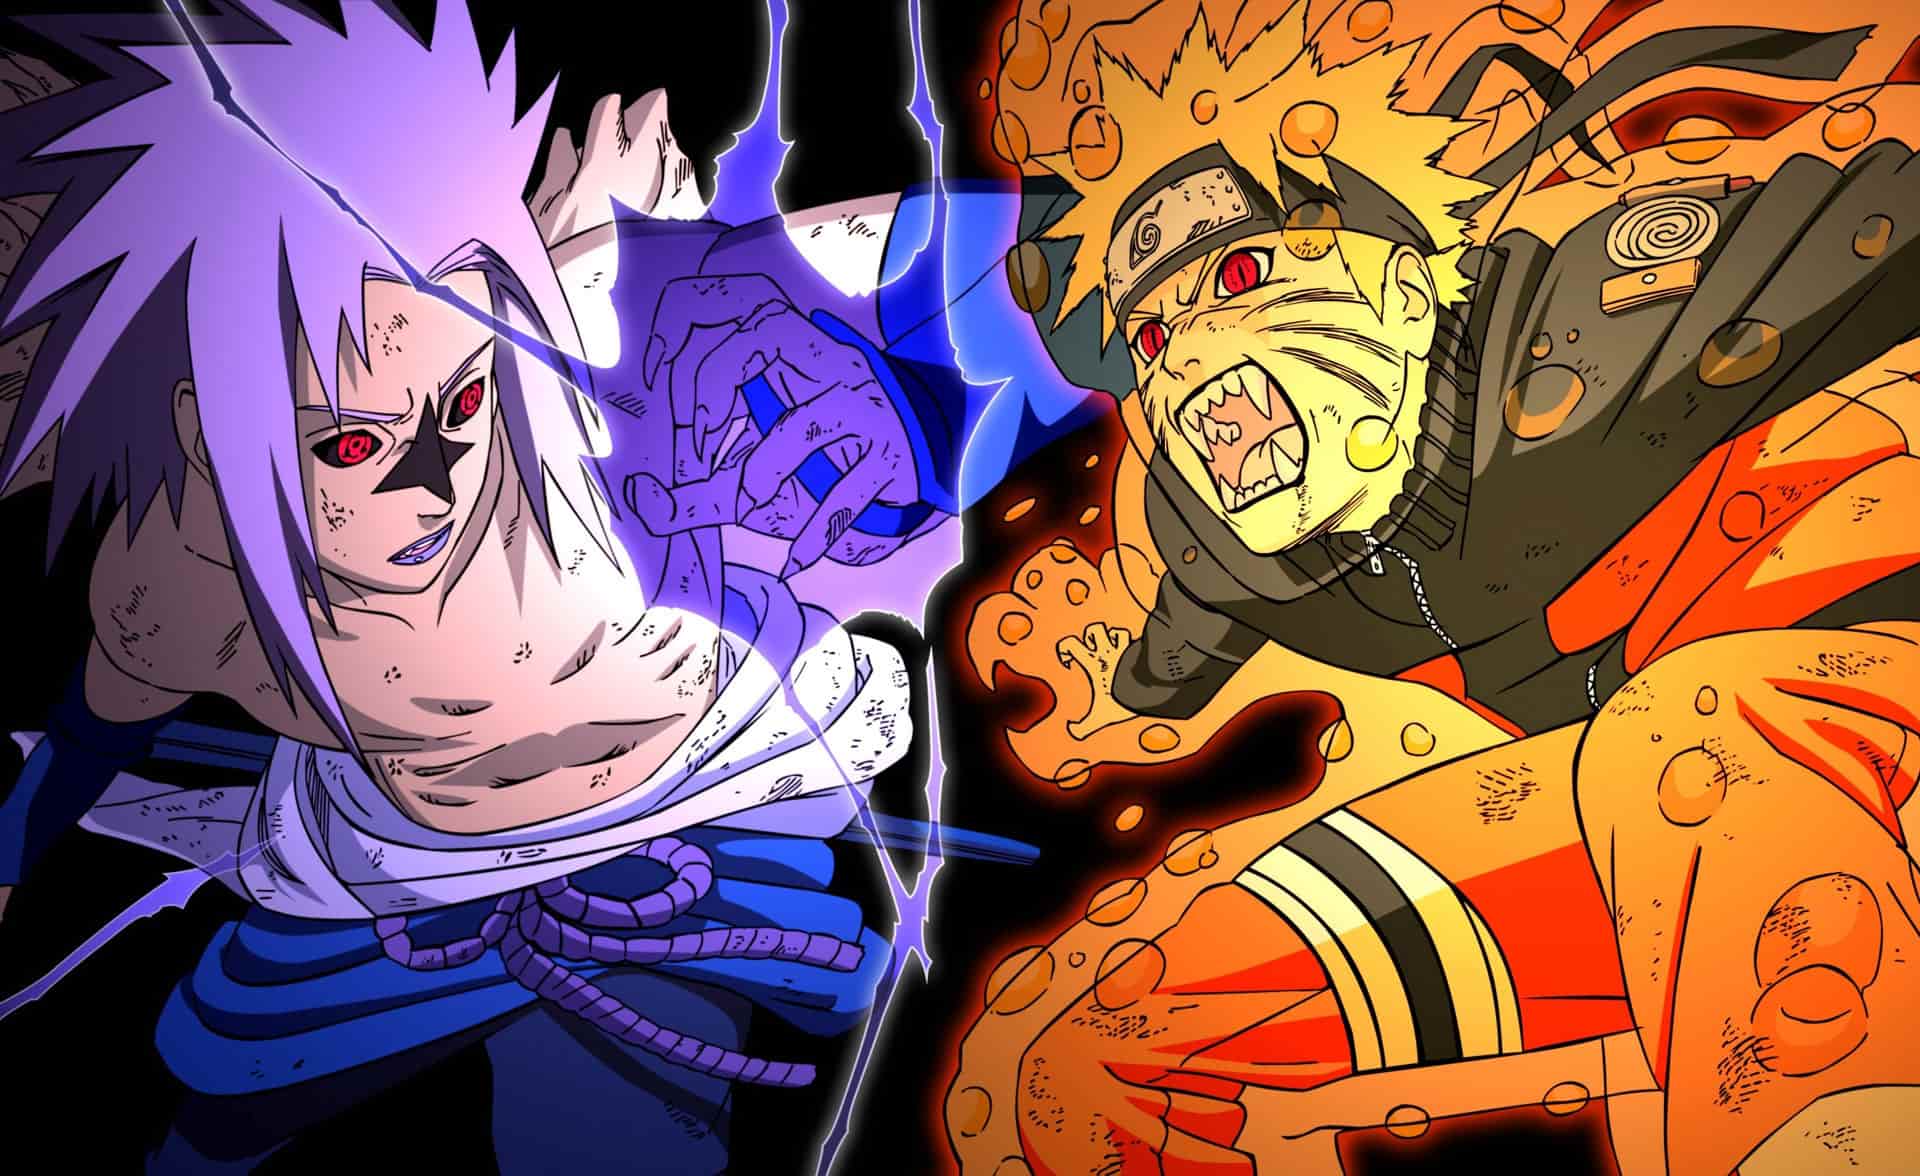 Bạn muốn sở hữu Avatar đôi Naruto và Sasuke cực hot? Hãy đến với chúng tôi! Tại đây, chúng tôi cung cấp cho bạn những hình ảnh đôi Naruto và Sasuke đẹp nhất để bạn có thể cùng chia sẻ với bạn bè và người thân!